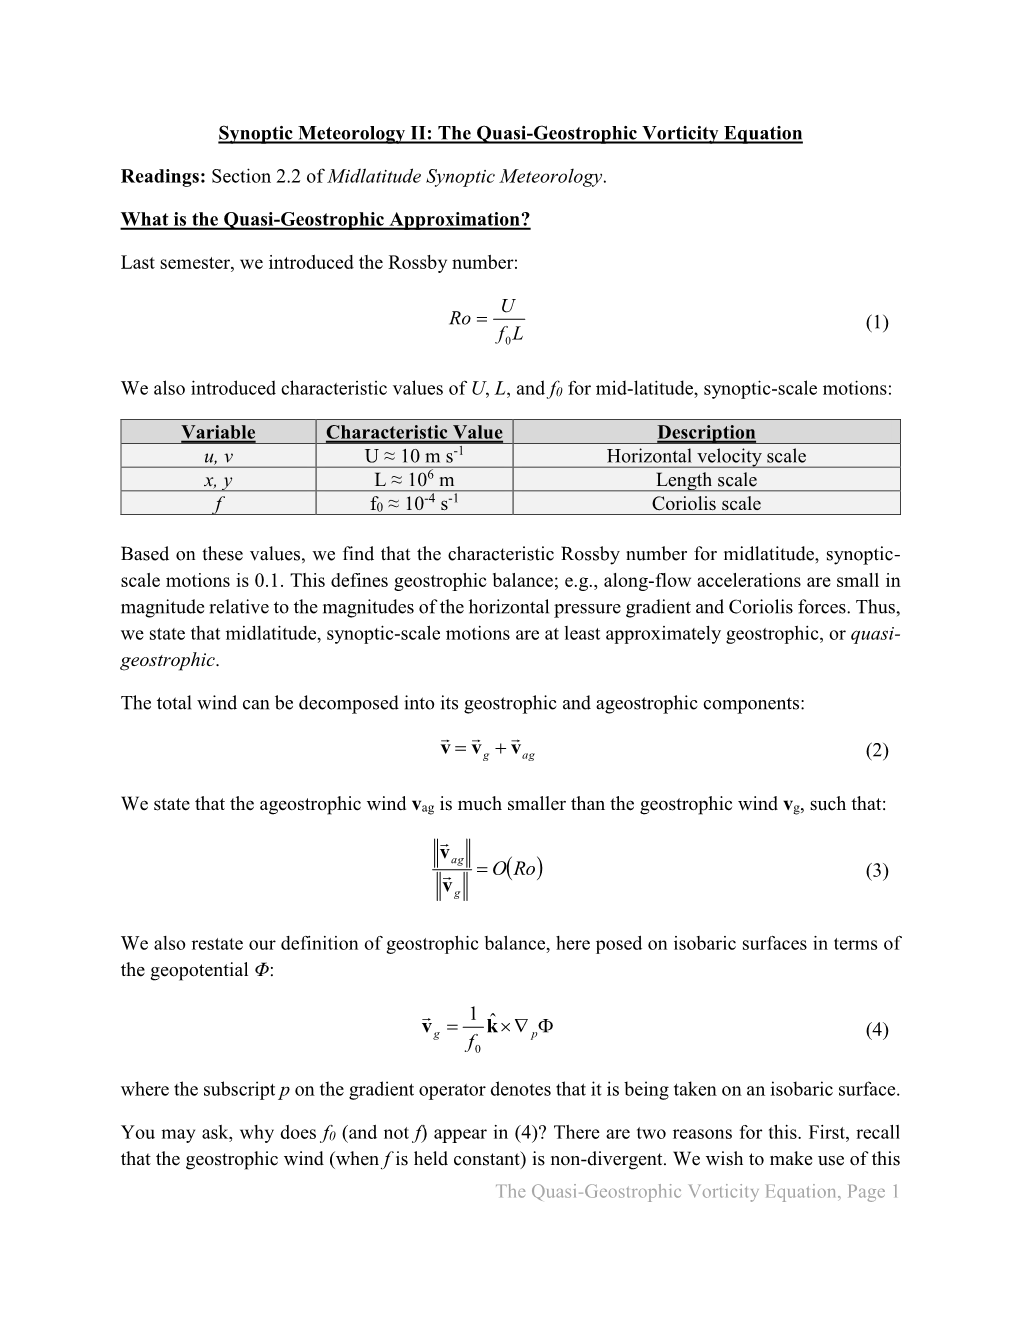 The Quasi-Geostrophic Vorticity Equation Readings